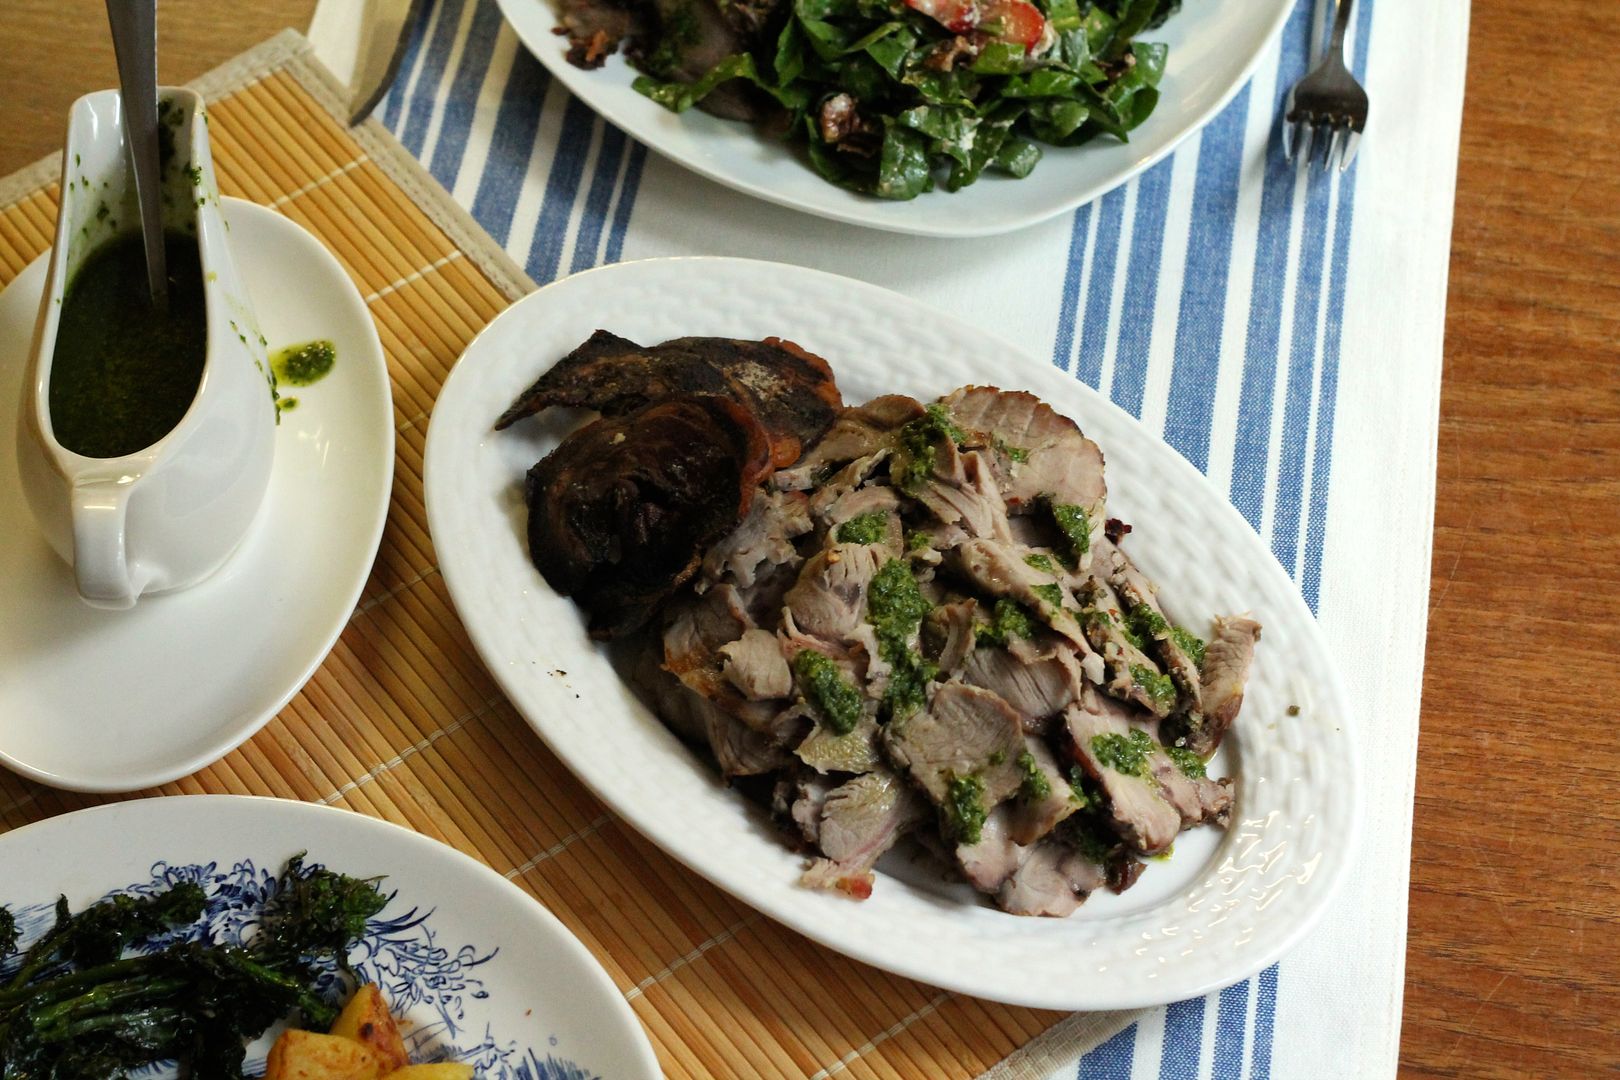 Porchetta-style Roast Pork Shoulder with Salsa Verde | Korena in the Kitchen